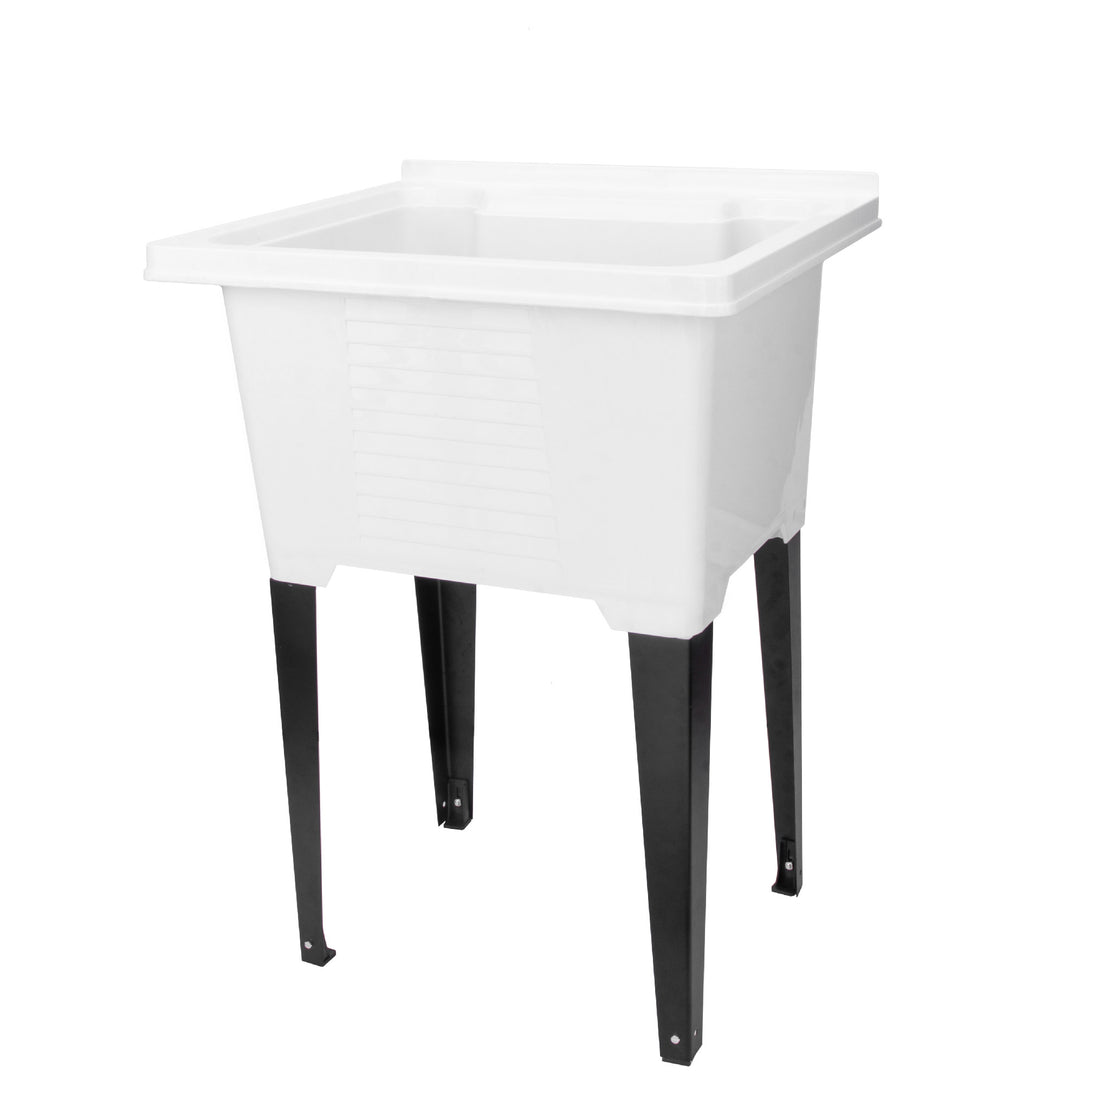 Tehila Luxe Freestanding White Utility Sink with Drainage Kit - Utility sinks vanites Tehila